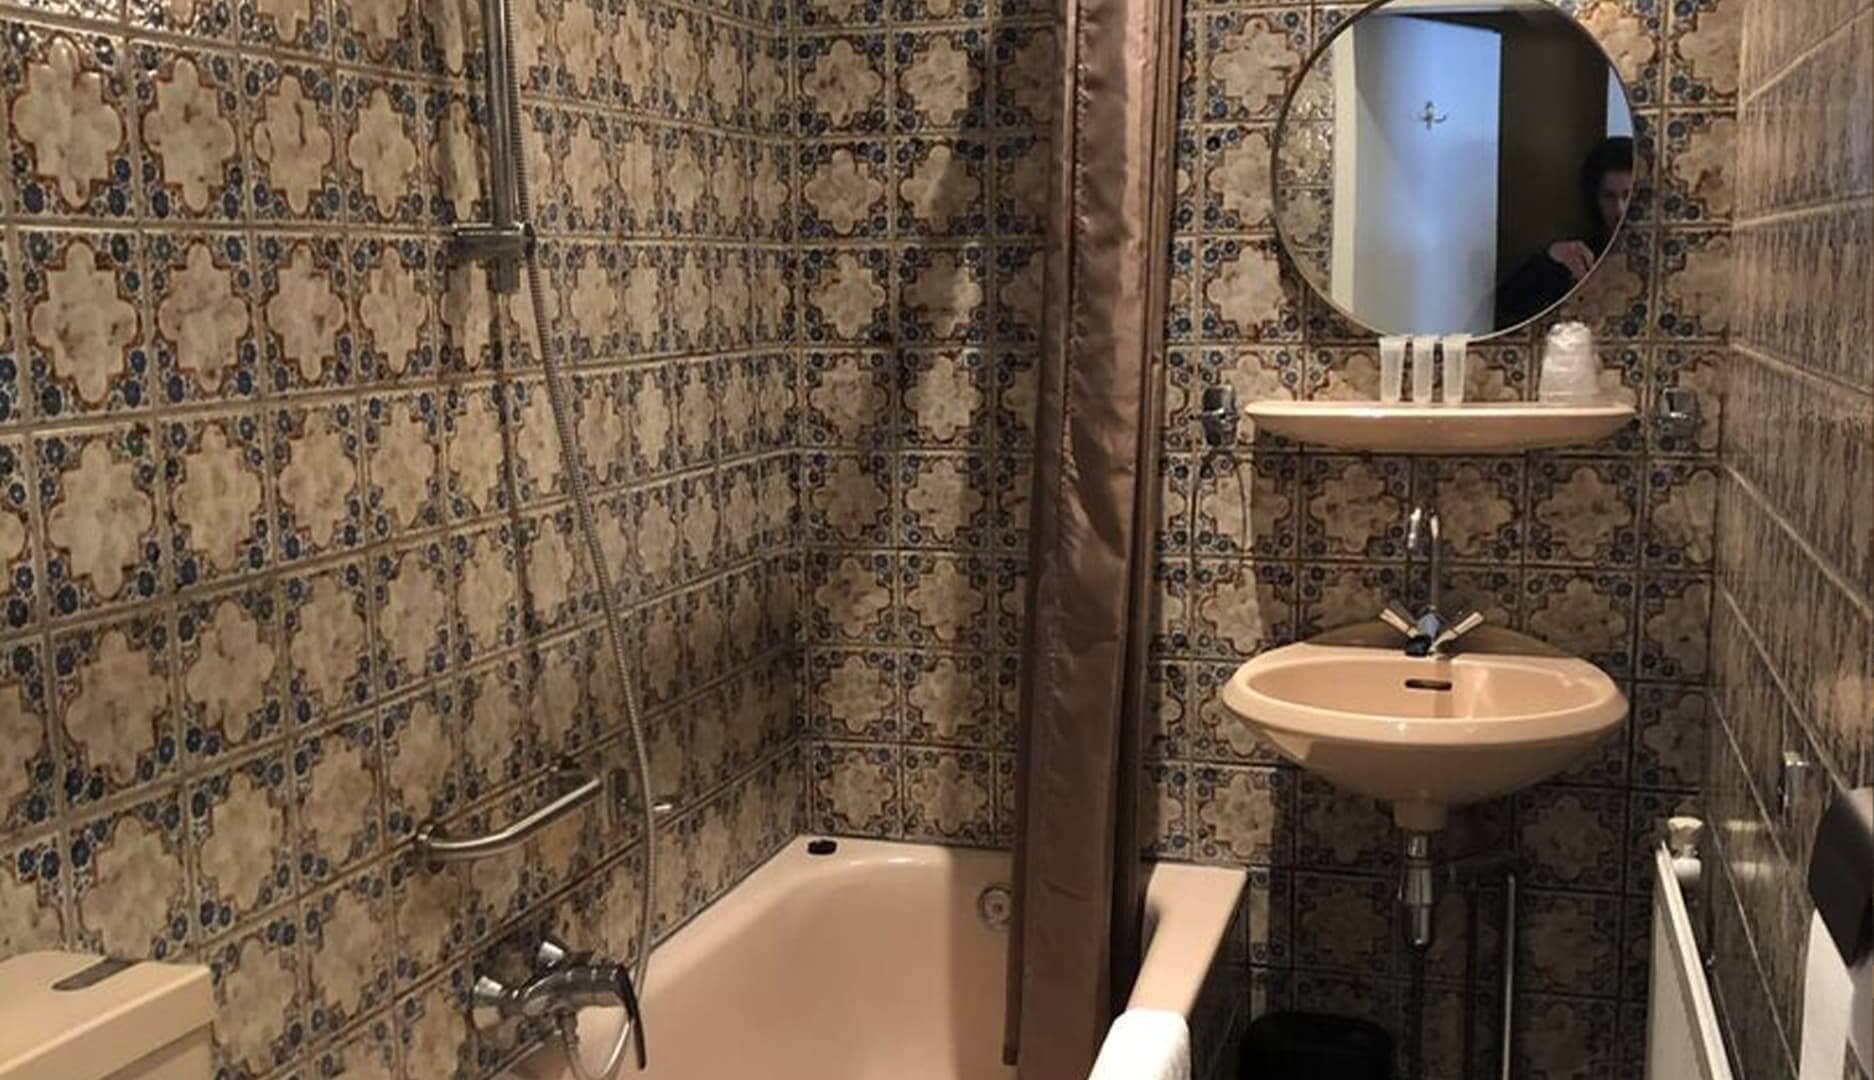 Badkamer van de comfort driepersoonskamer single beds bij het hotel in drenthe